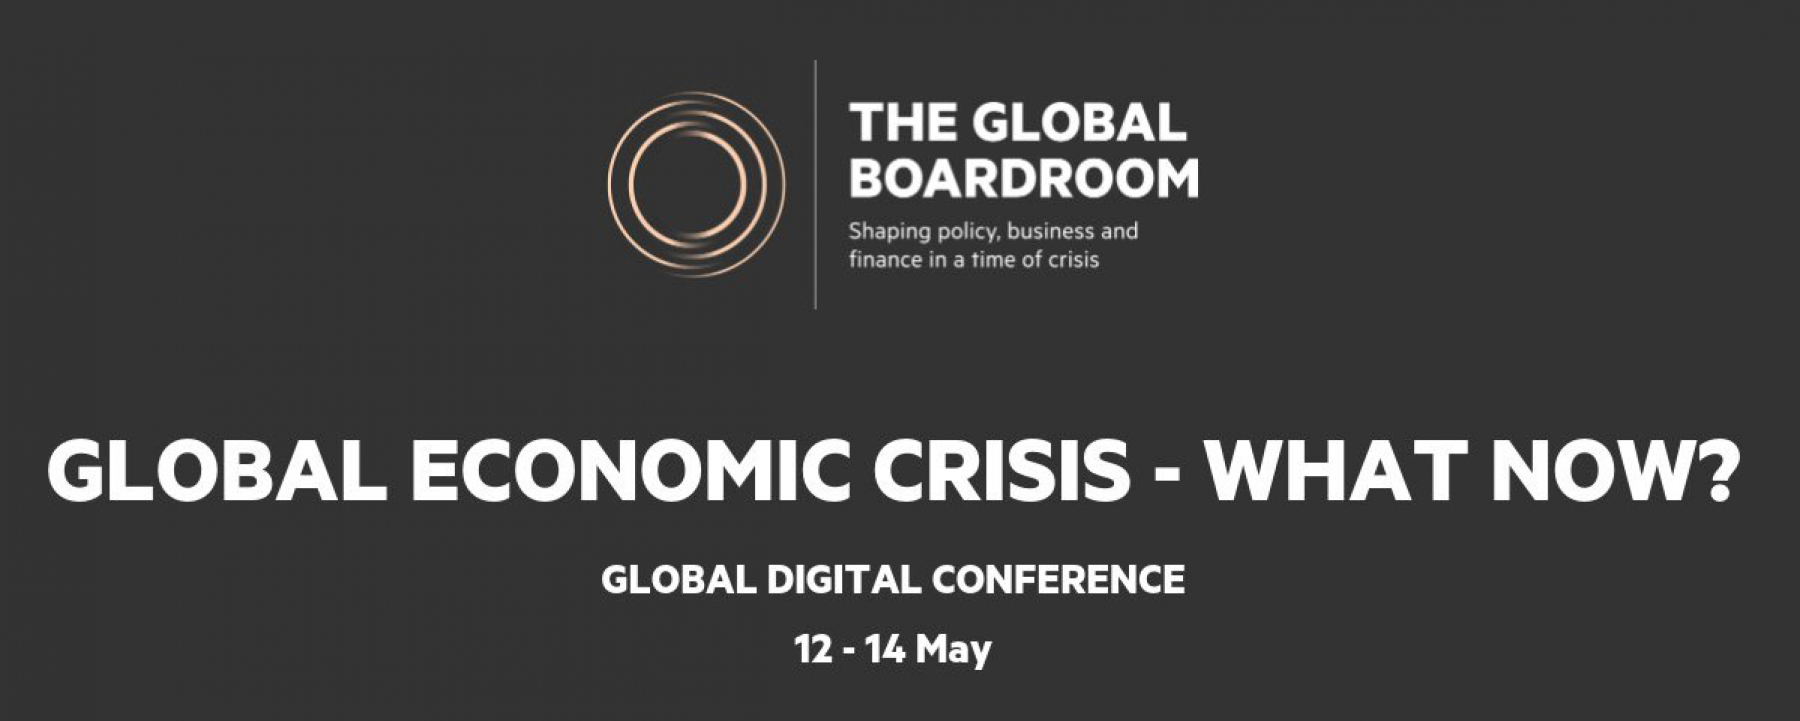 Webinar Global Economic Crisis - What now?, du 12 au 14 mai 2020, organisé par le Financial Times 